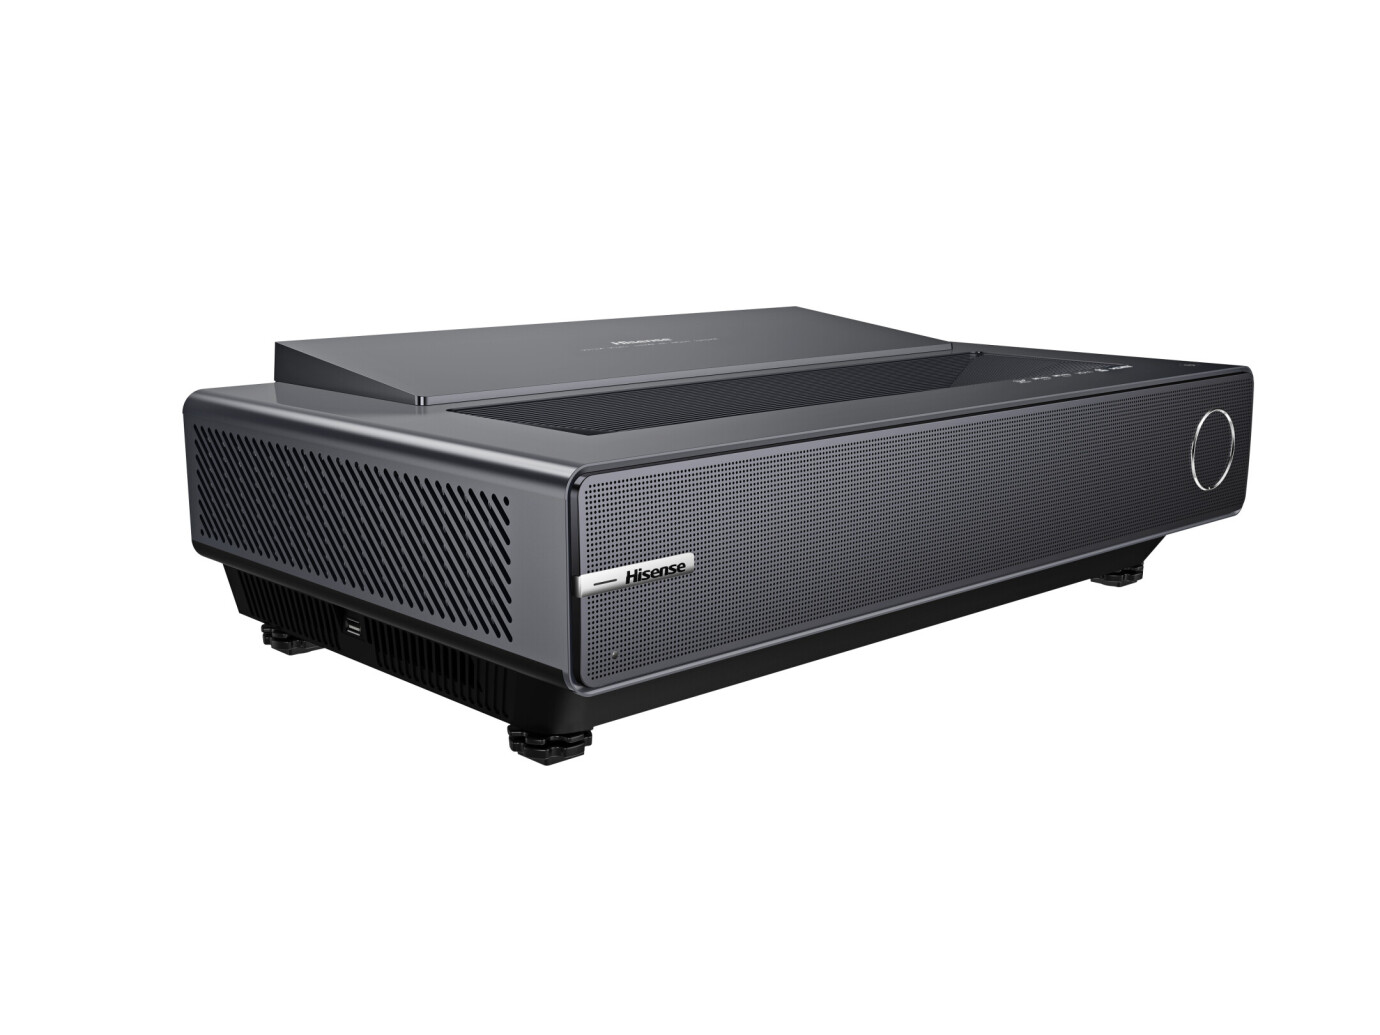 Vorschau: Hisense PX2-PRO TriChroma Heimkino Laser TV mit 4K UHD Auflösung - Demo